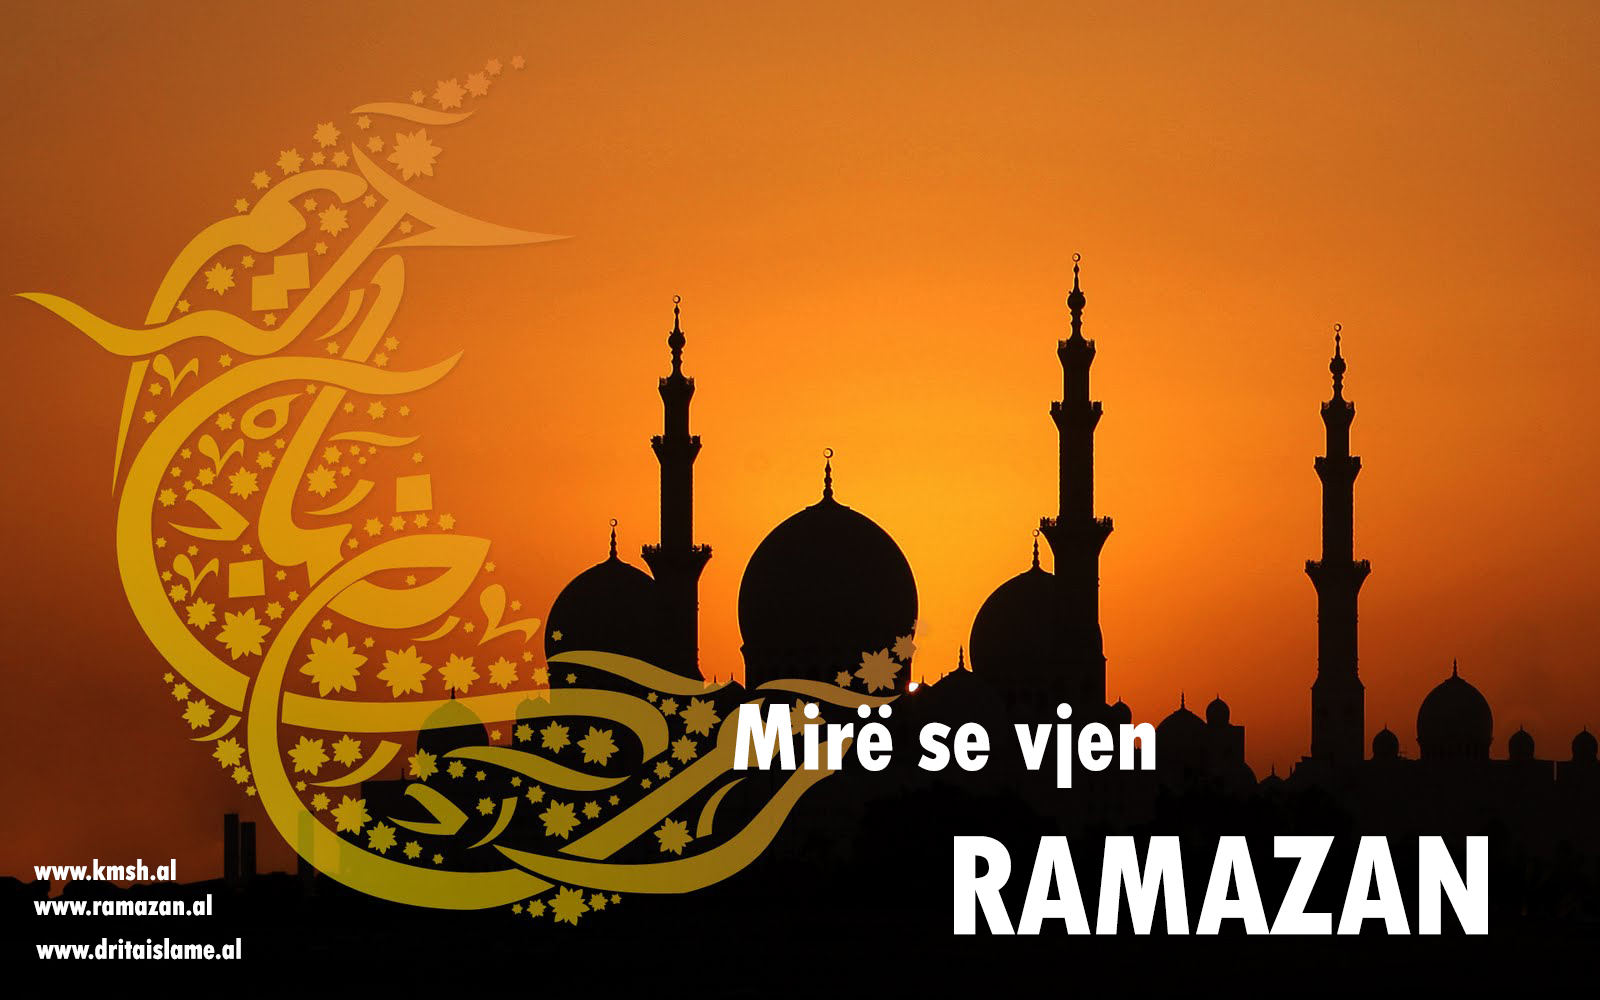 Ramazani fillon më 9 Korrik 2013